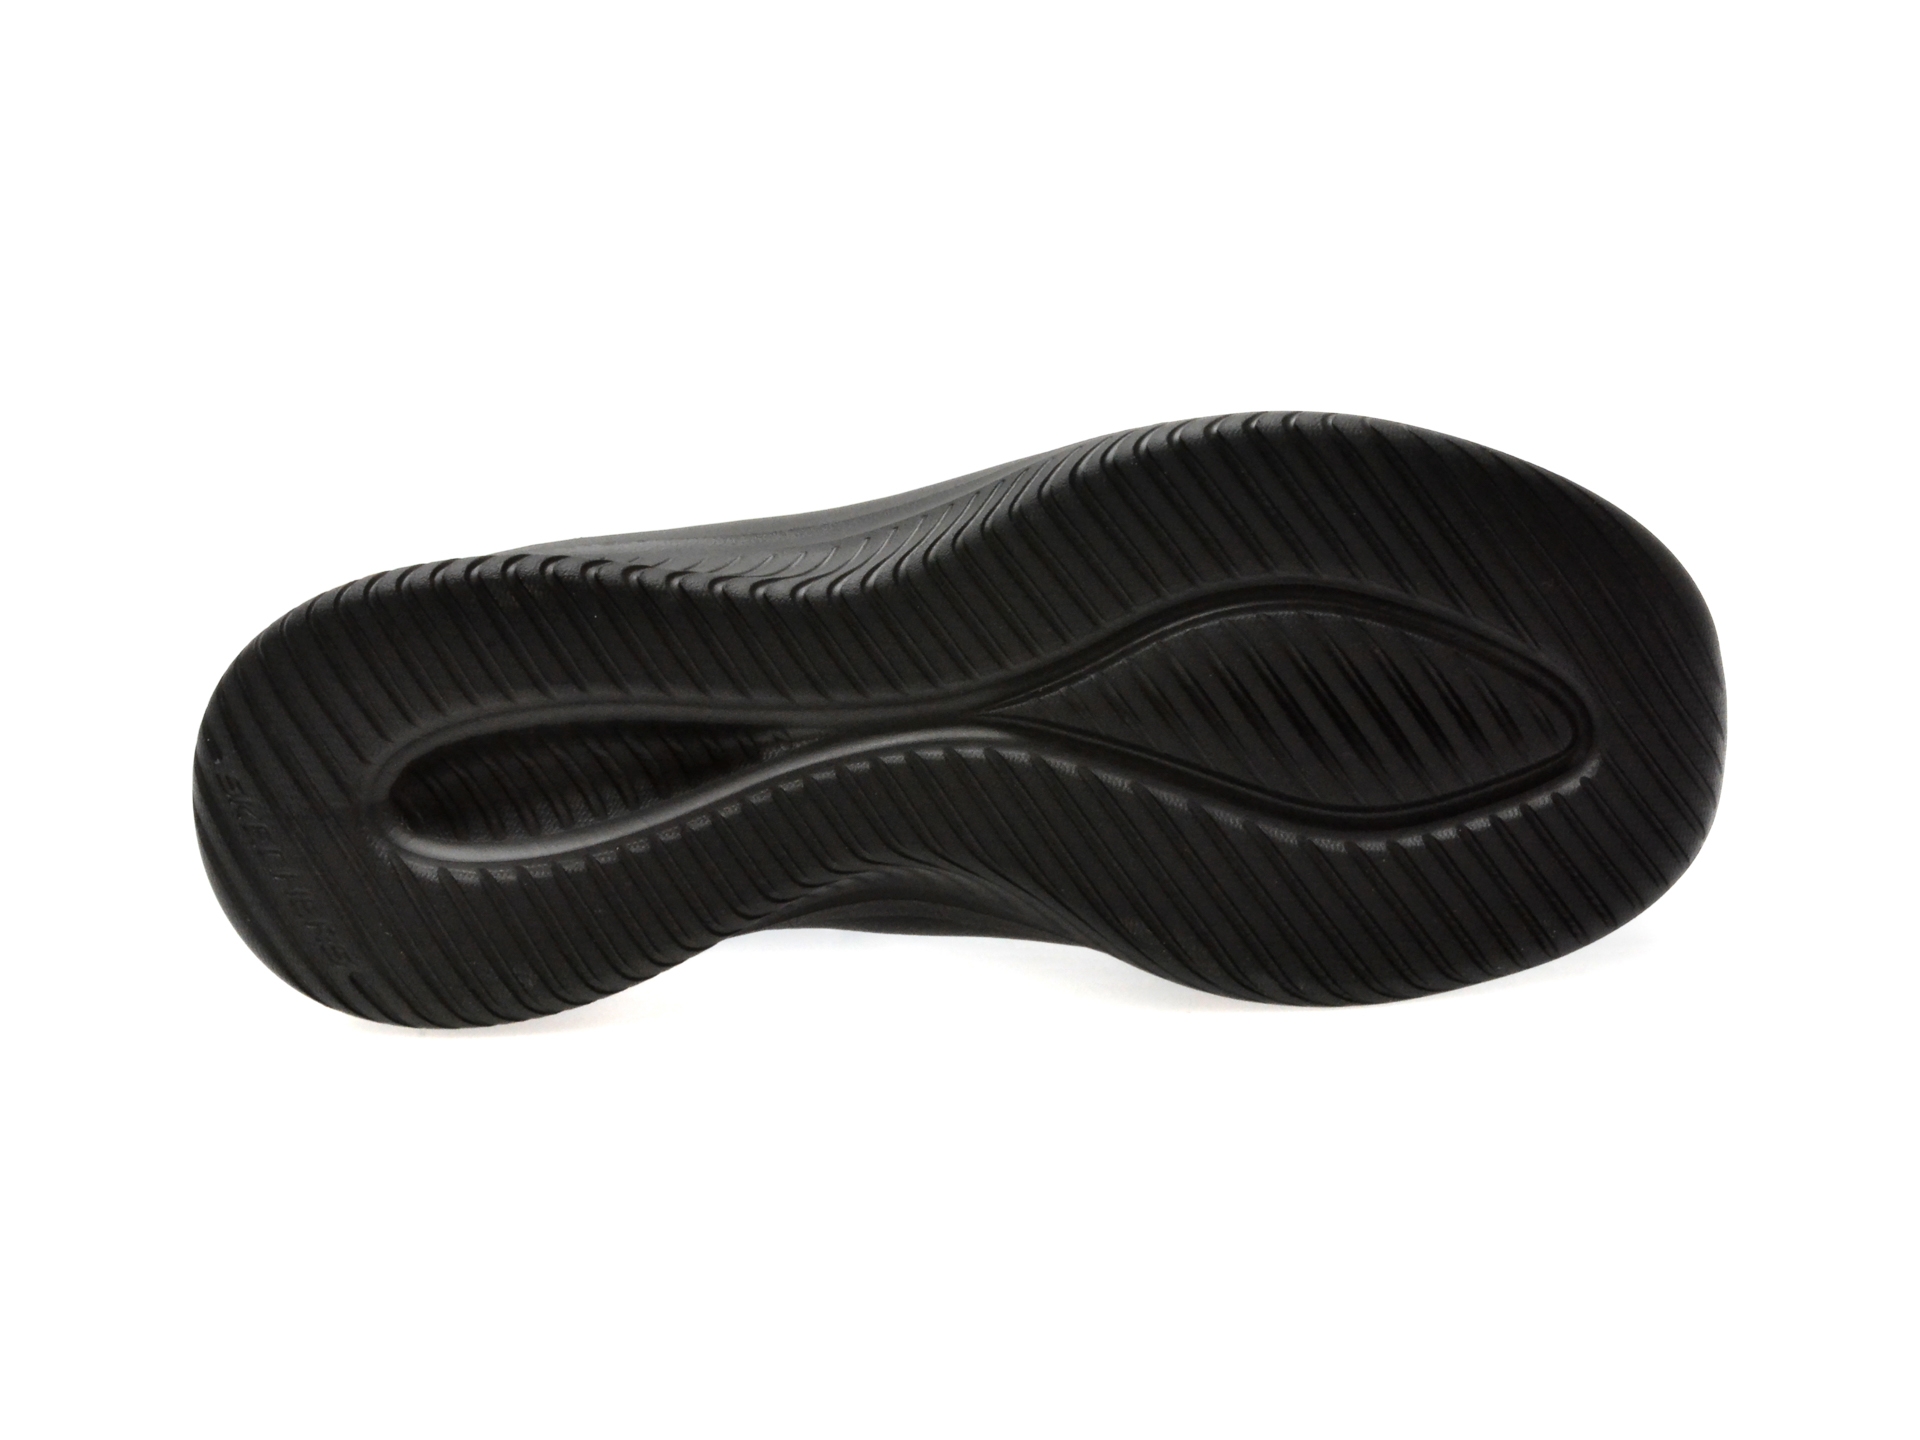 Pantofi casual SKECHERS negri, ULTRA FLEX 3.0, din piele naturala